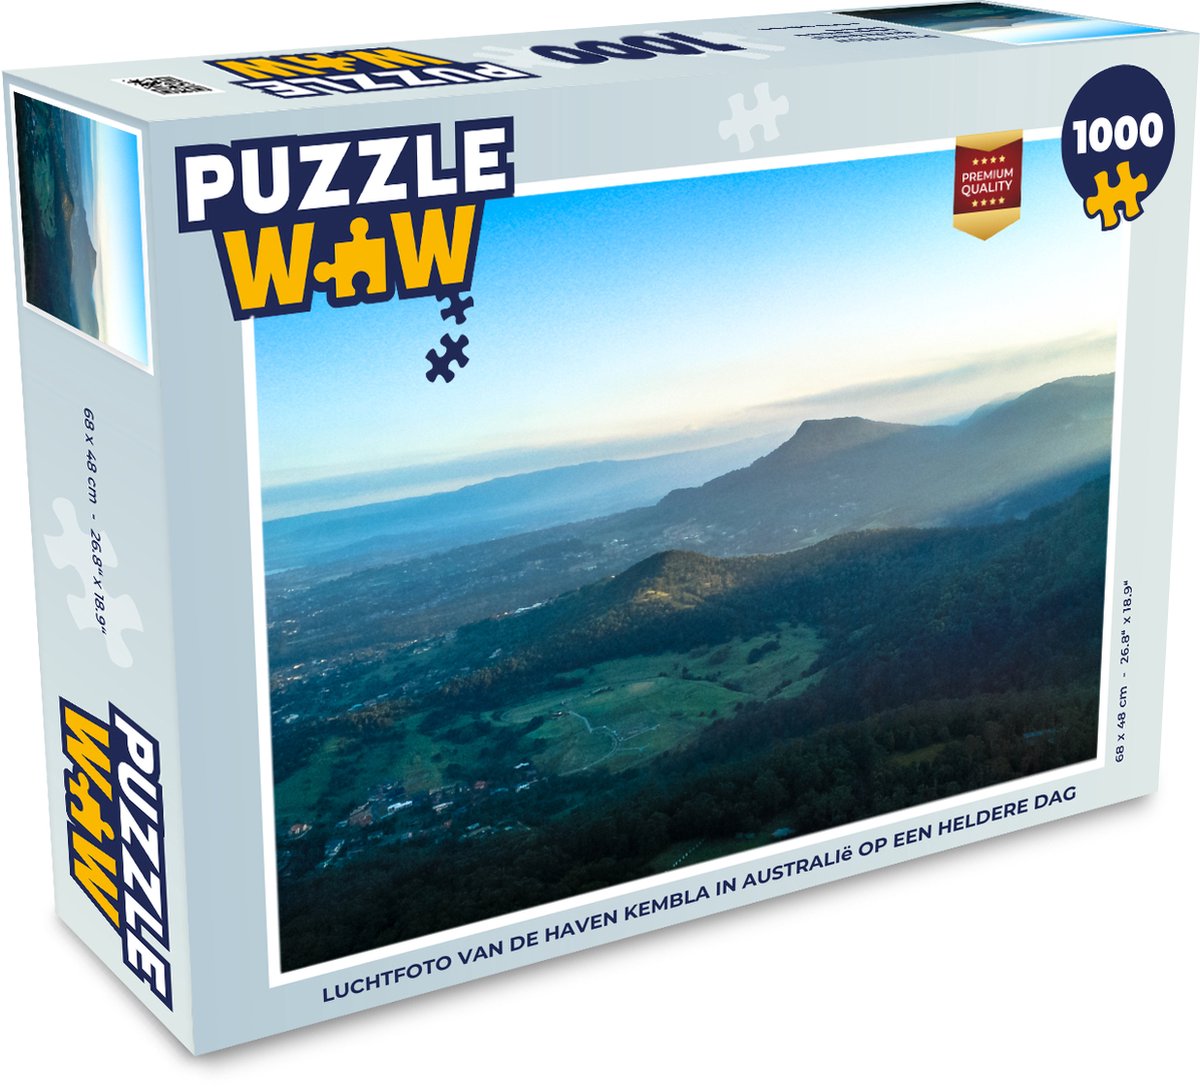 Afbeelding van product Puzzel 1000 stukjes volwassenen Wollongong 1000 stukjes - Luchtfoto van de haven Kembla in Australië op een heldere dag - PuzzleWow heeft +100000 puzzels